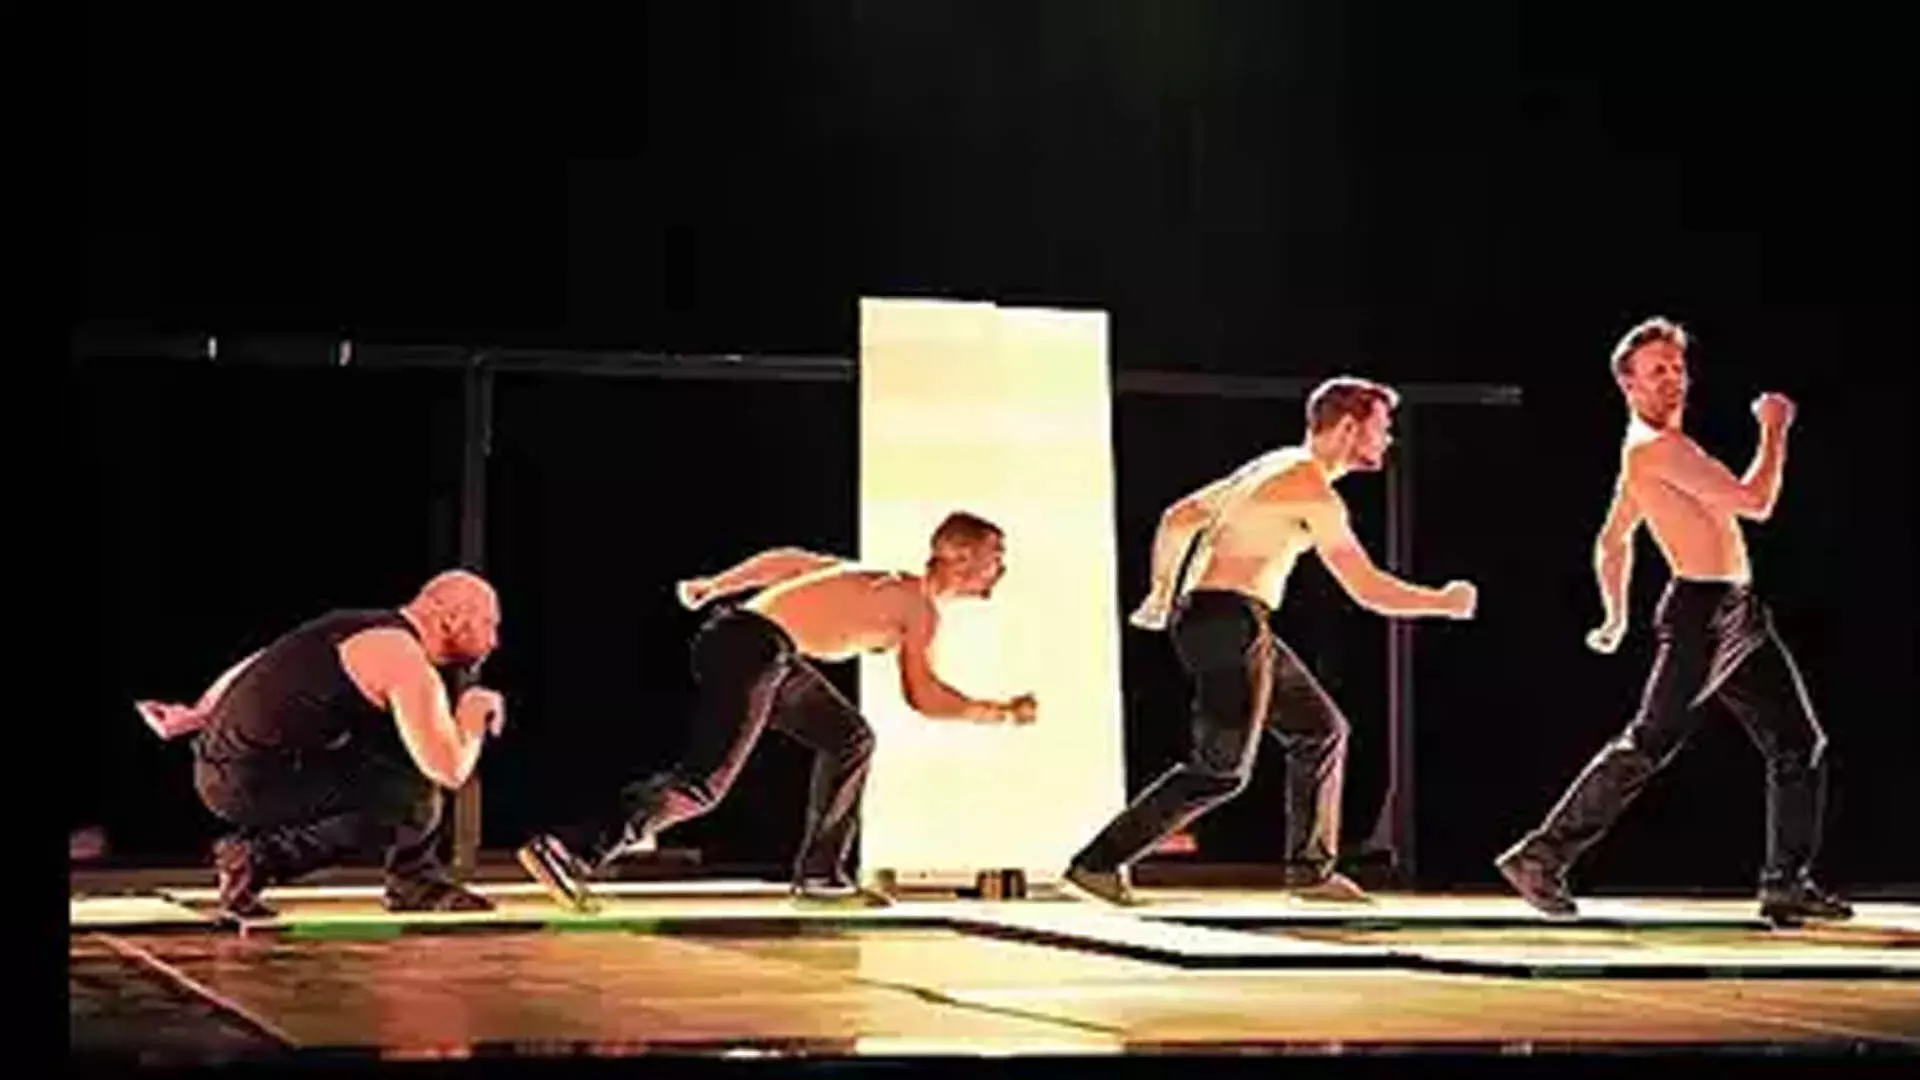 नृत्य, स्टंट, वॉक-मैन अभिनय: डेनिश कलाकार बच्चों को मंत्रमुग्ध करते  हुए